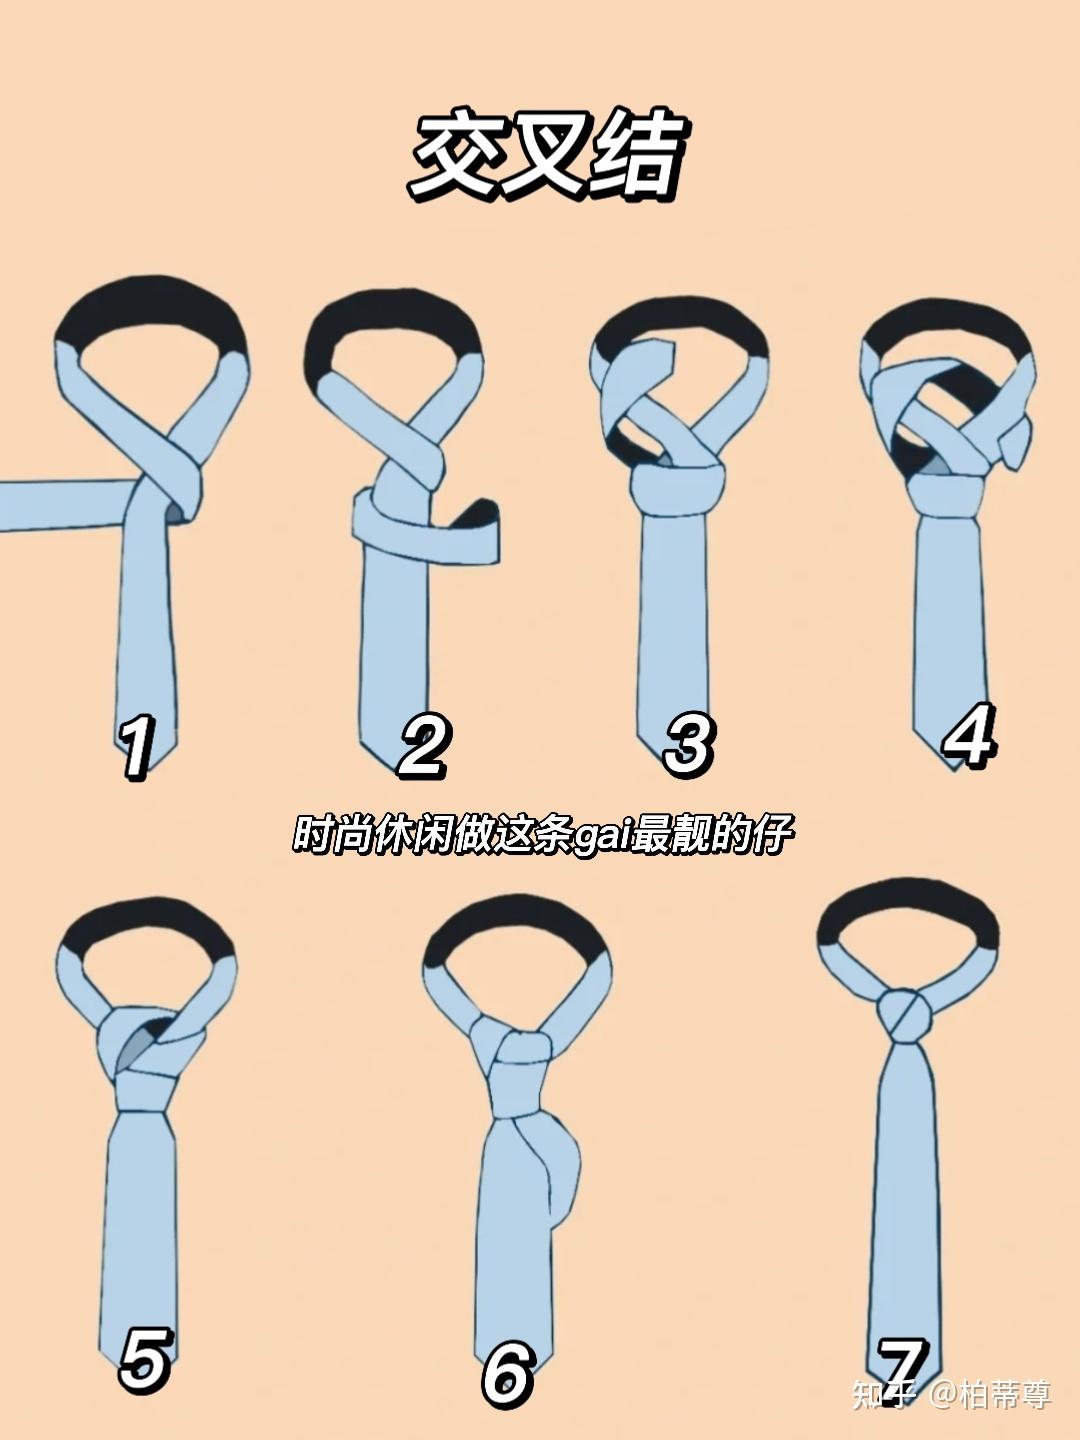 领带的六种打法 